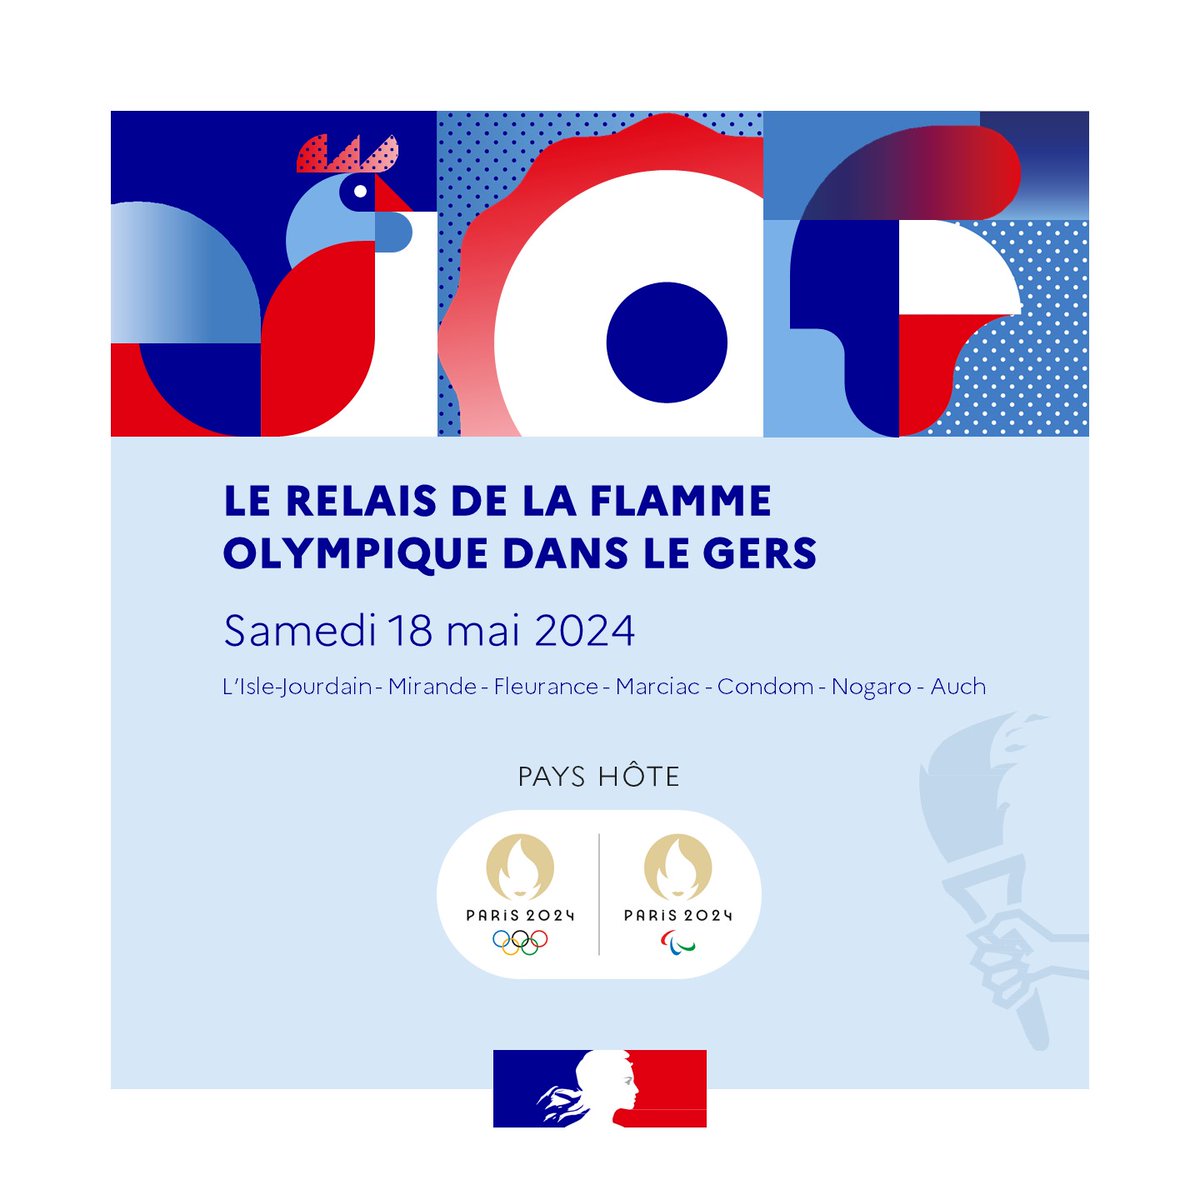 #sécurité | La flamme olympique dans le @LeGers32 J-3

🔥👟 Le Gers accueillera le #RelaisDeLaFlamme ce samedi 18 mai 2024 !

🔎Parcours de la flamme, consignes de sécurité : toutes les informations utiles ici 👉 gers.gouv.fr/Actualites/Pas… 

#àlintérieurDesJeux #EquipeDesFrançais 🇫🇷